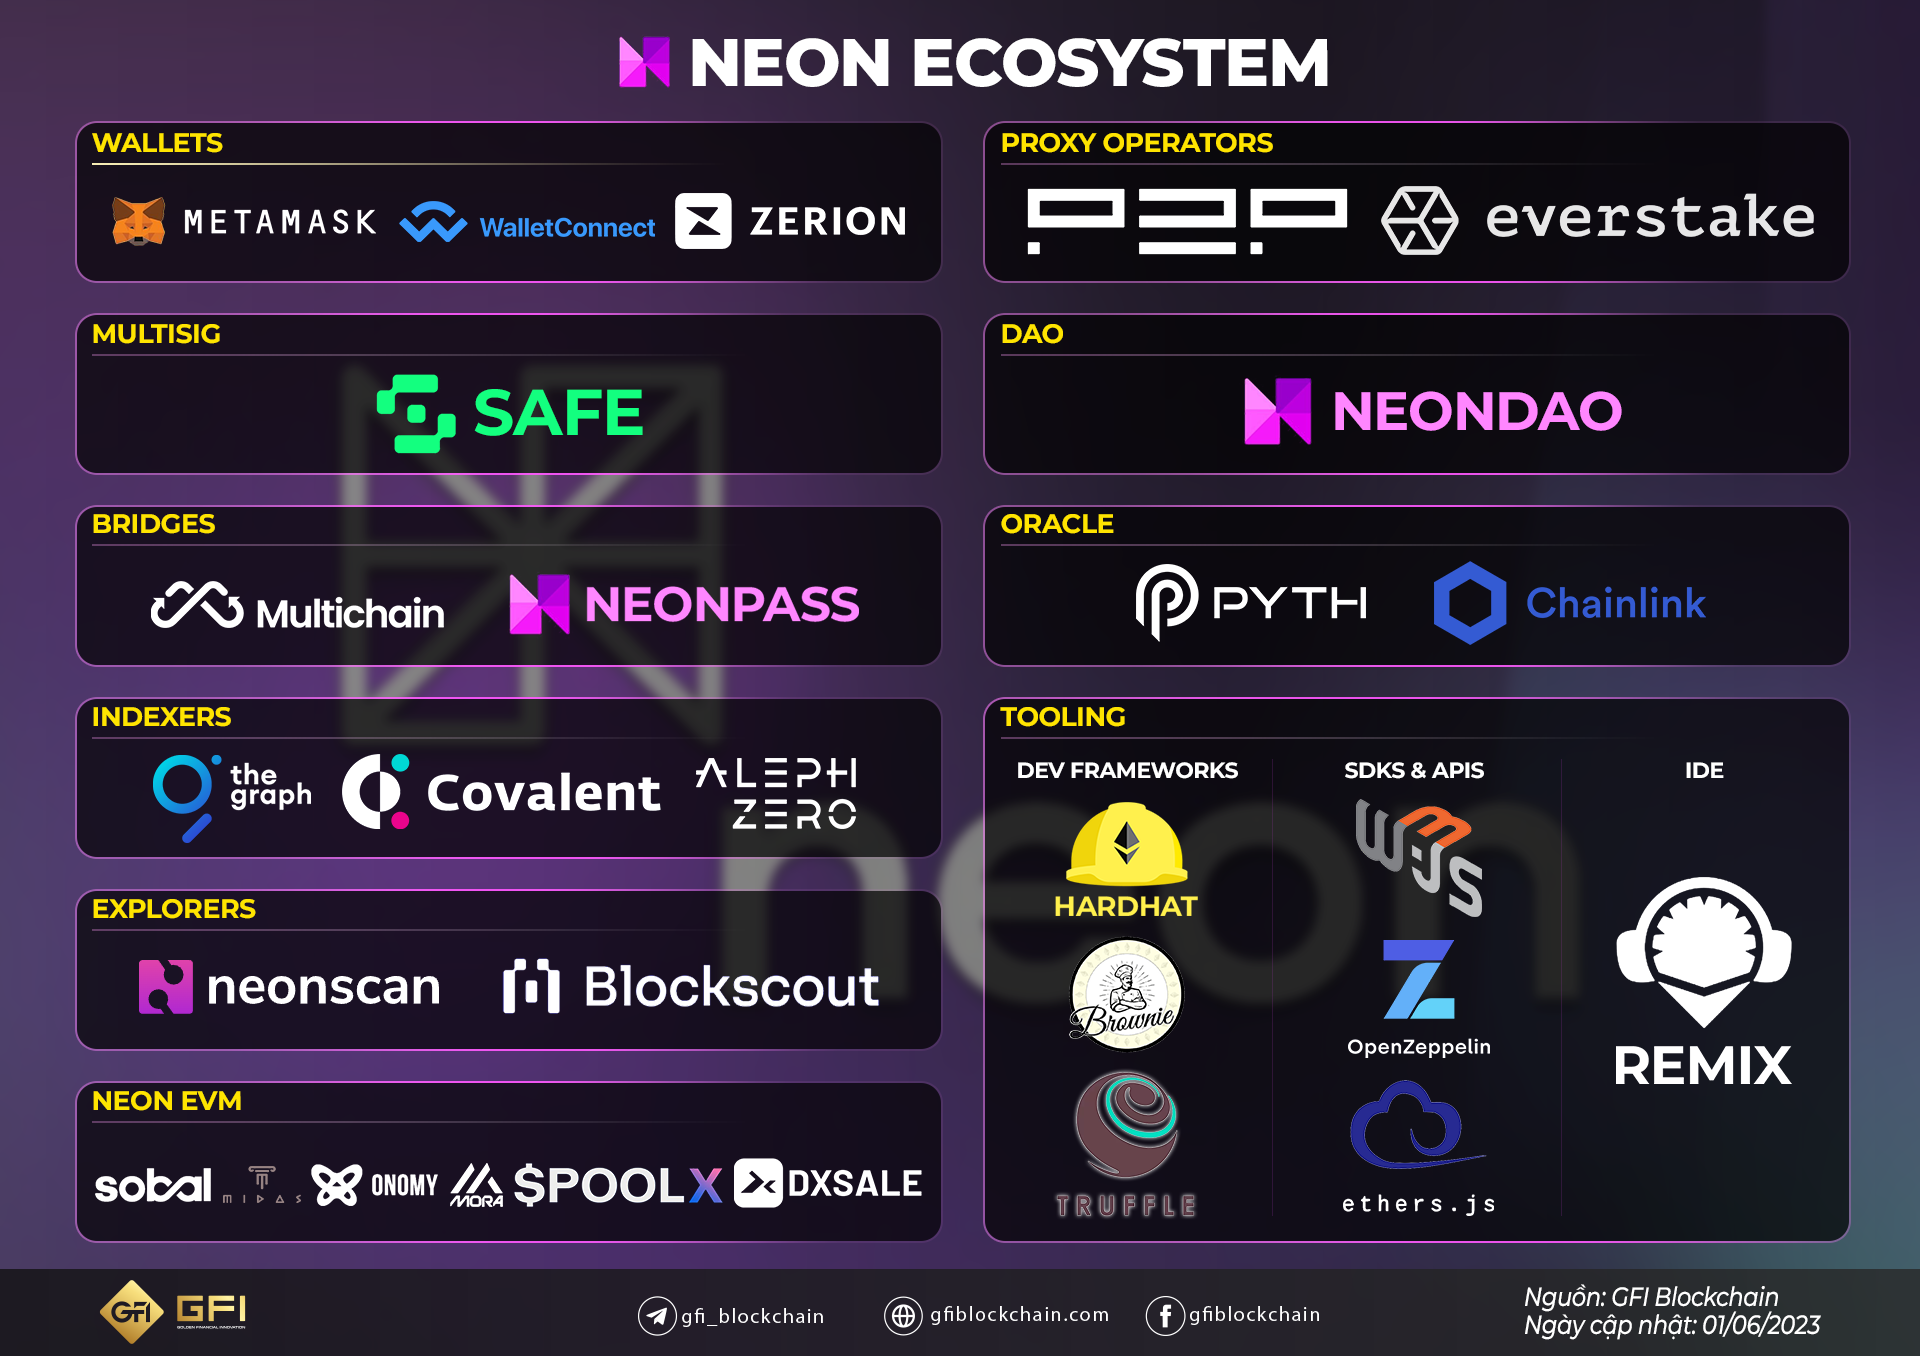 Neon Ecosystem